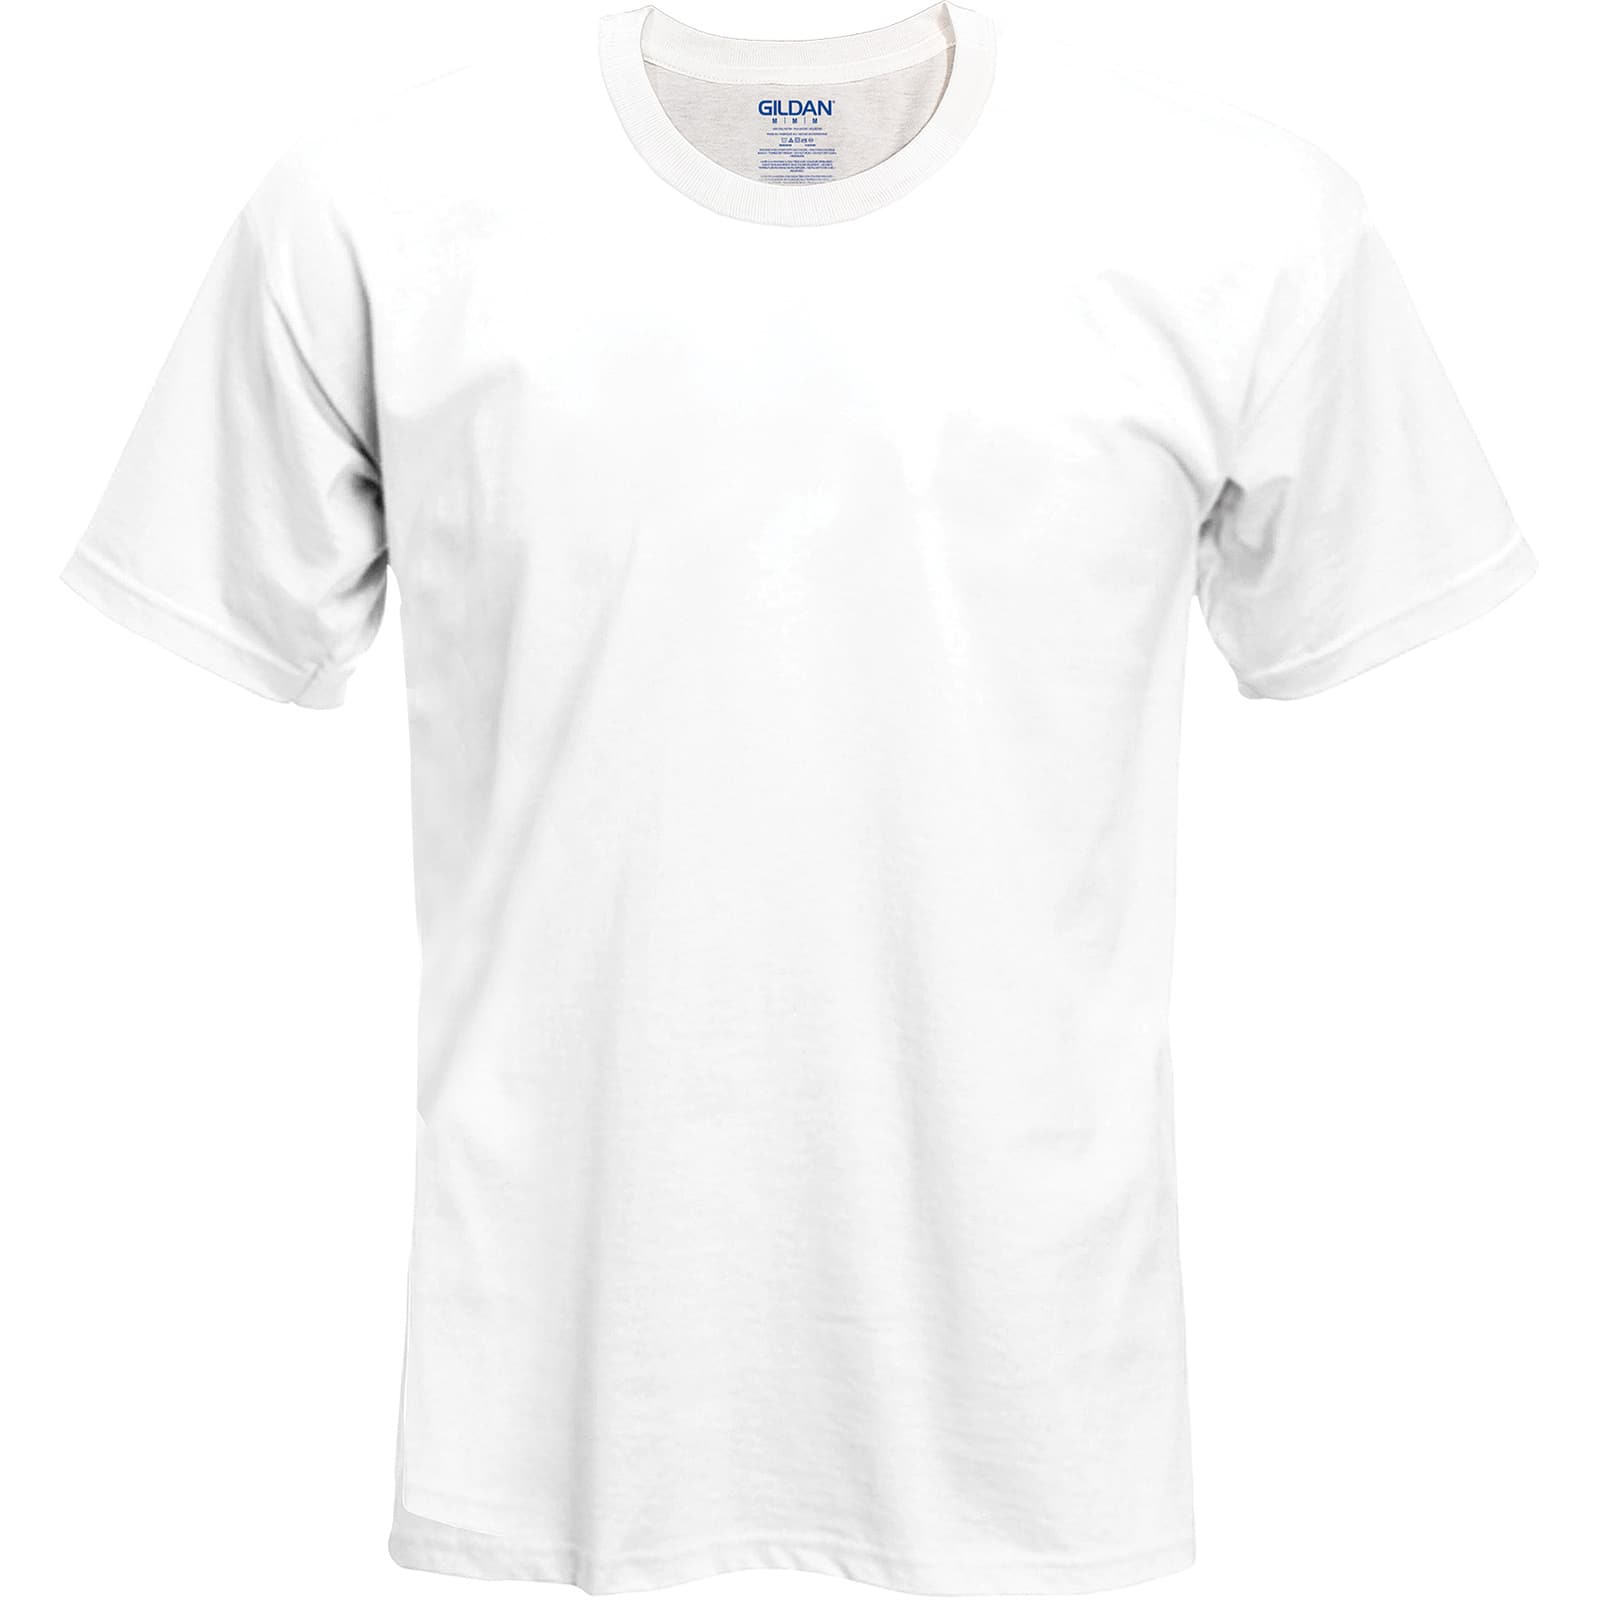 white t shirt michaels